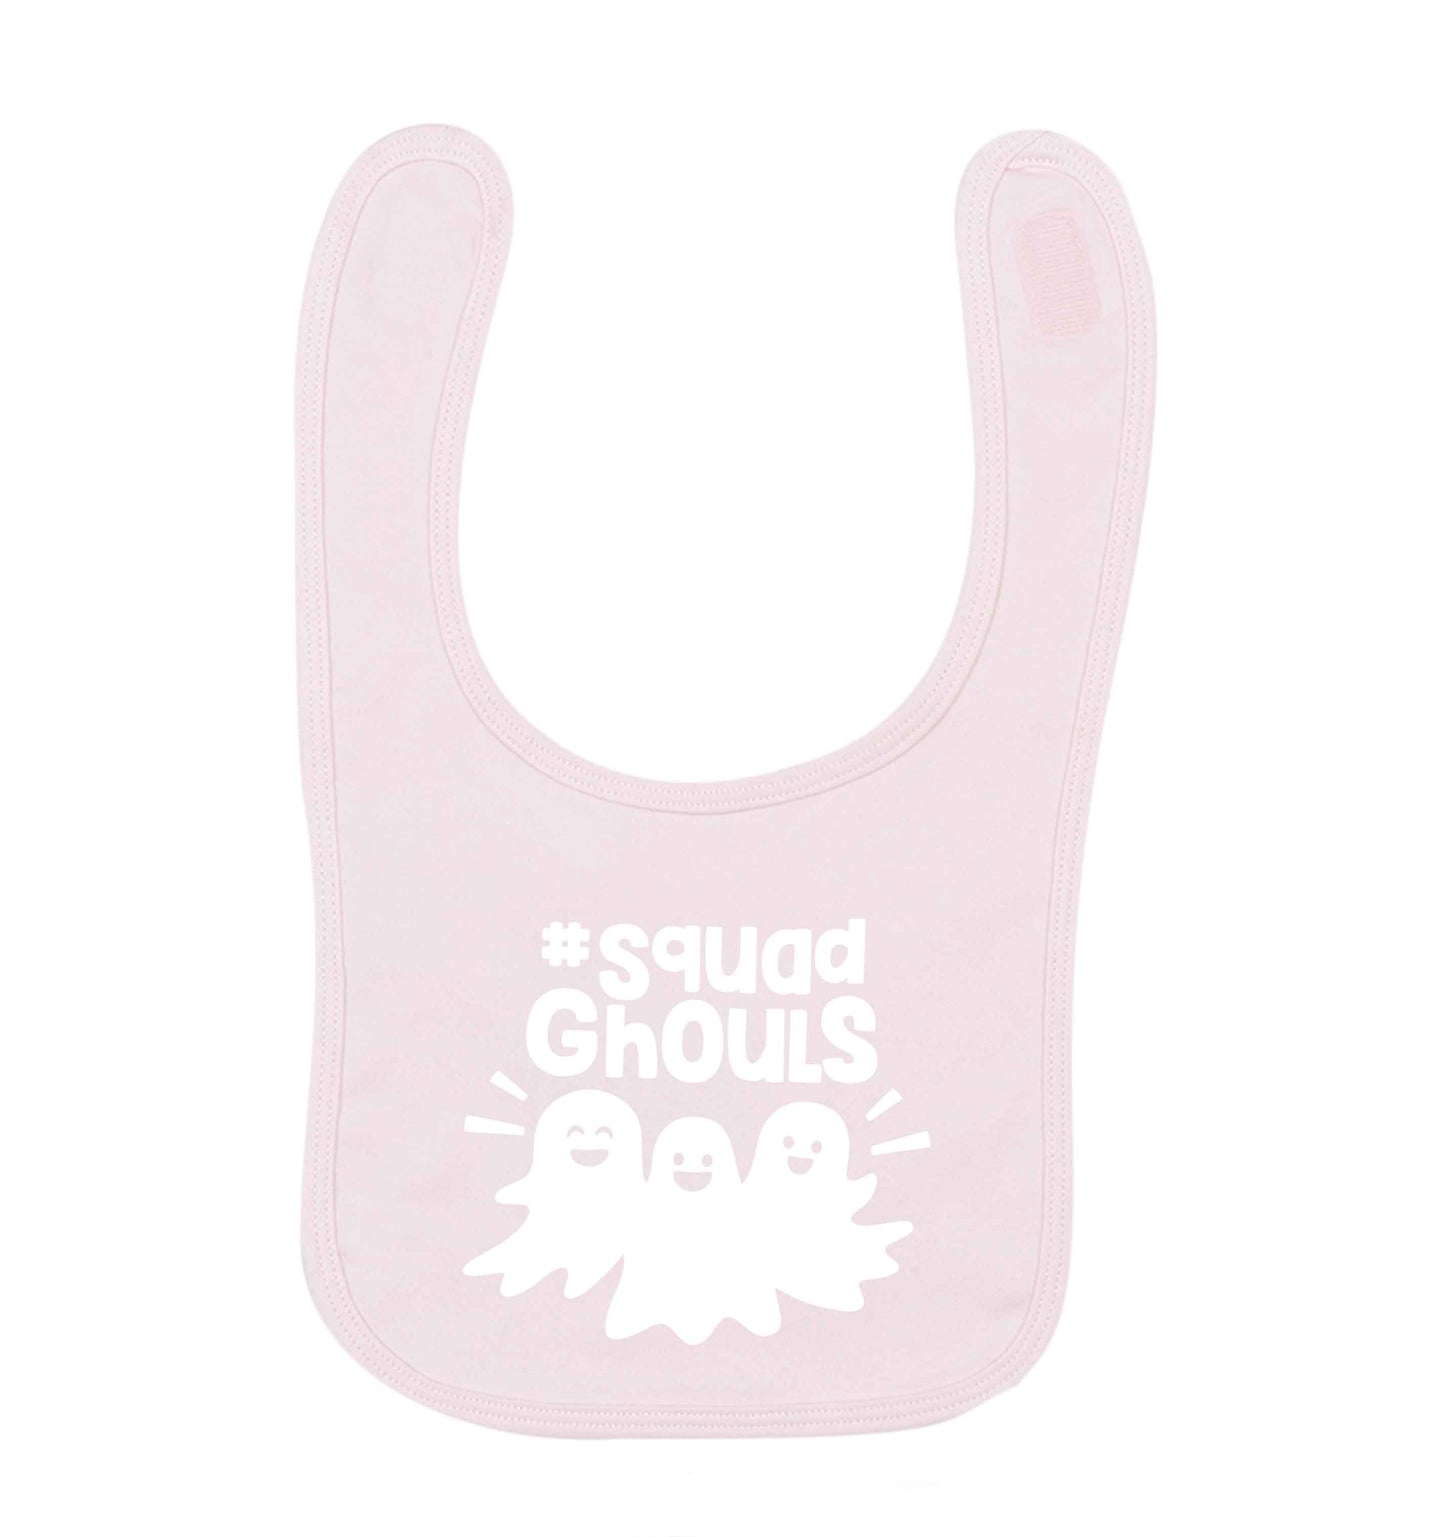 Squad ghouls Kit pale pink baby bib